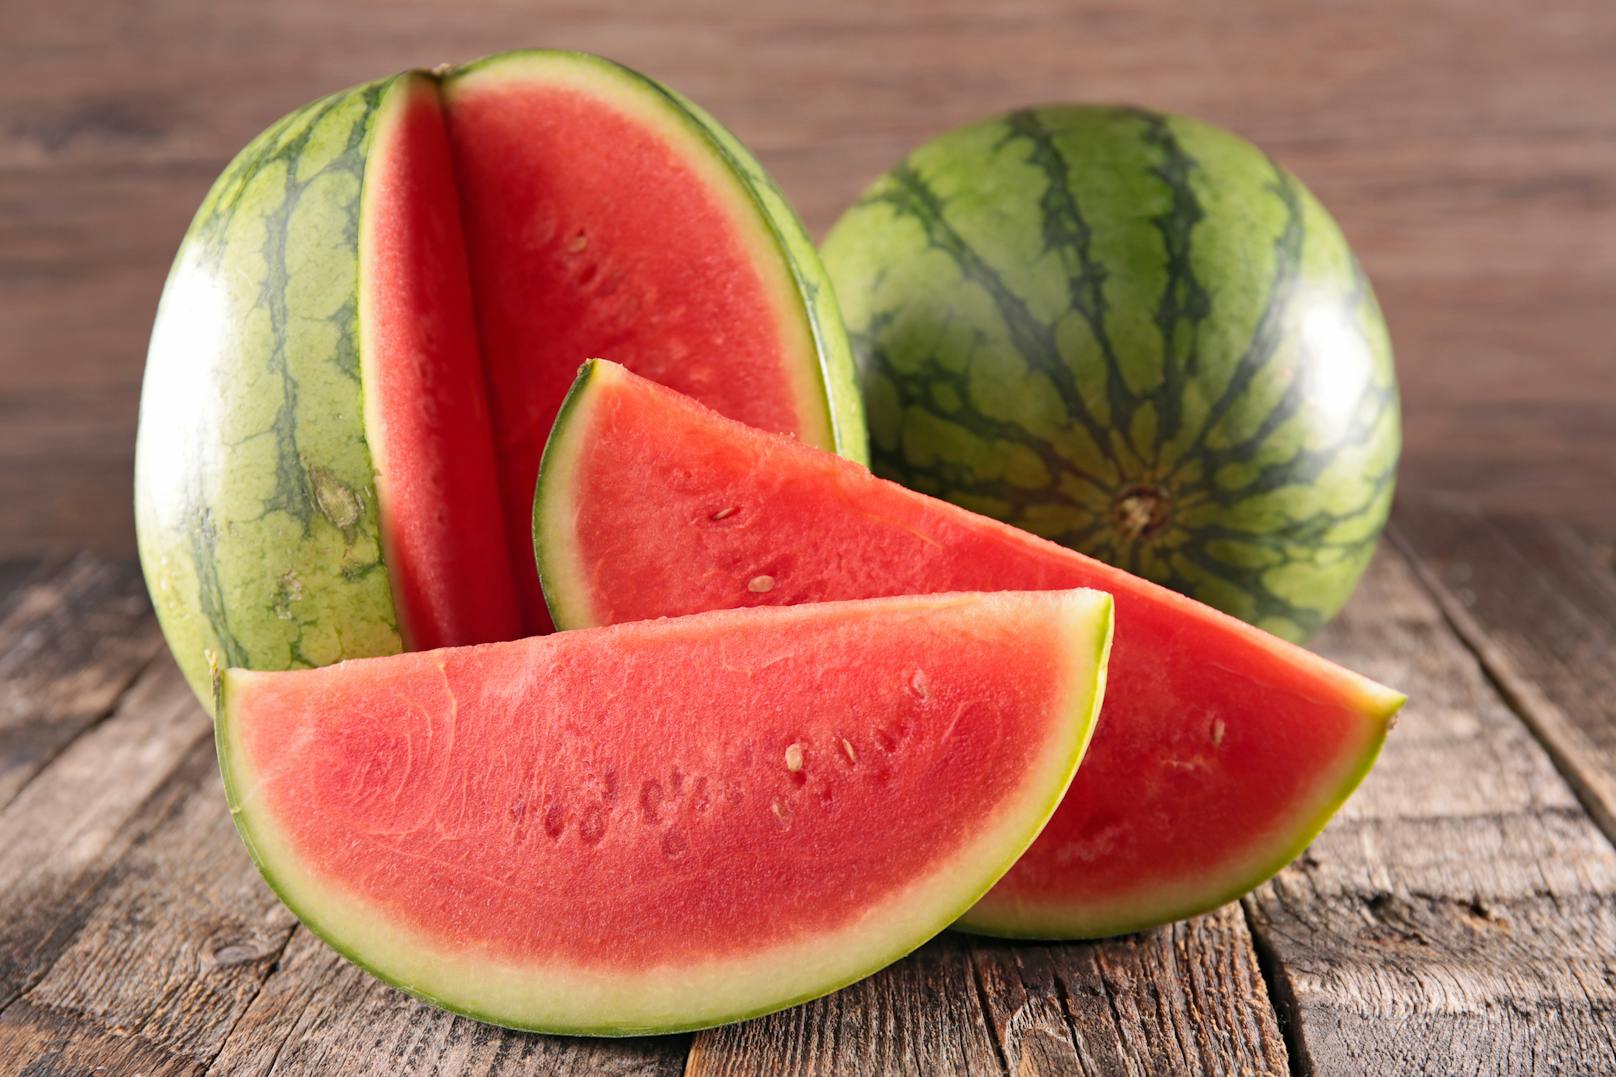 Wassermelonen sind eine gesunde und schmackhafte Erfrischung bei sommerlichen Temperaturen. Beim Kauf sind wir vor die Herausforderung gestellt, ihren Reifegrad zu erahnen.